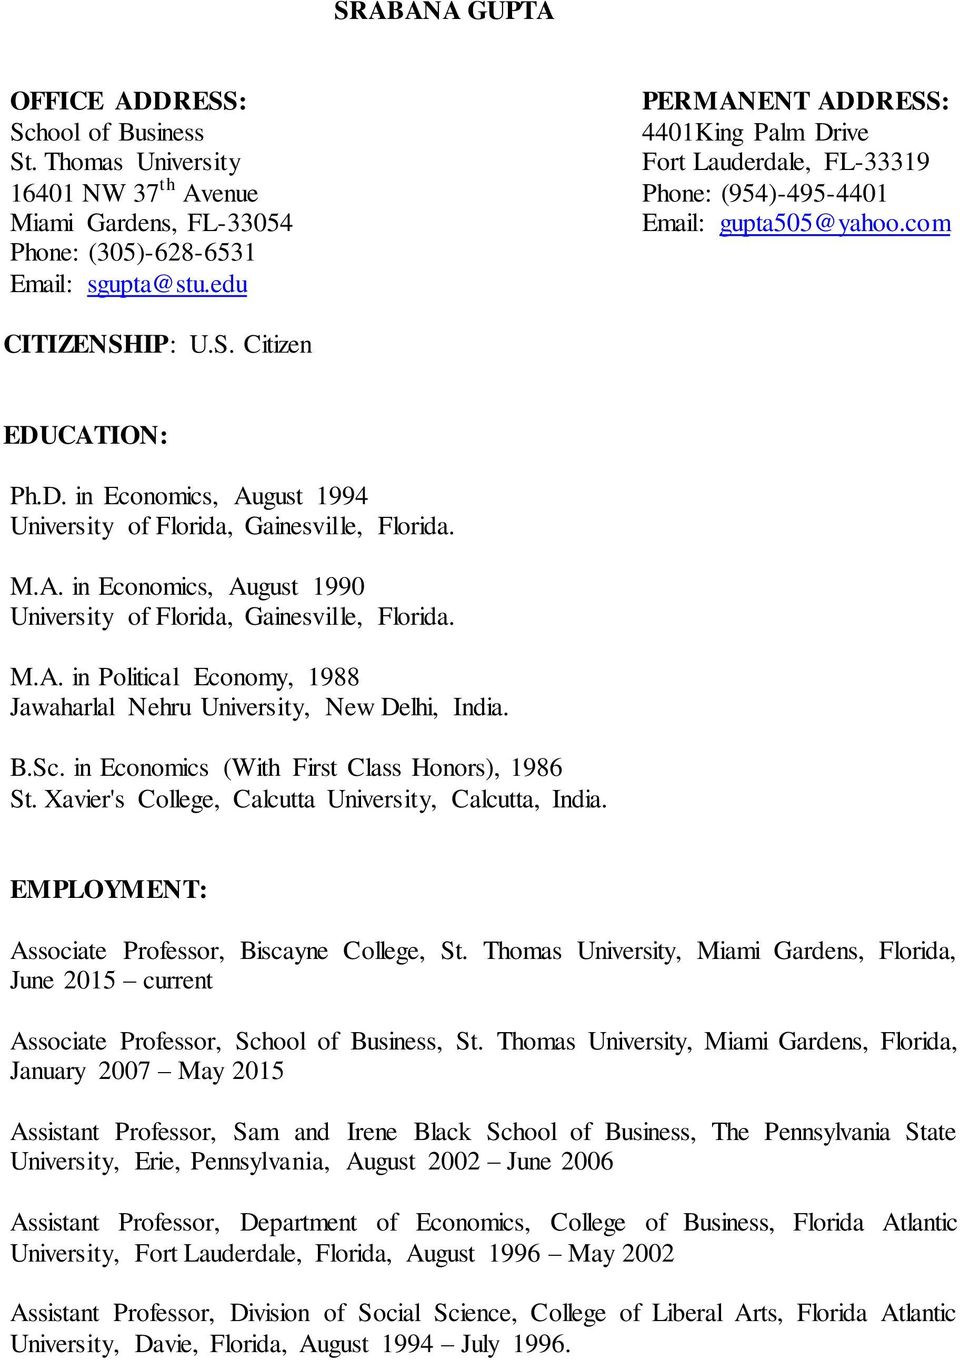 IP: U.S. Citizen EDUCATION: Ph.D. in Economics, August 1994 University of Florida, Gainesville, Florida. M.A. in Economics, August 1990 University of Florida, Gainesville, Florida. M.A. in Political Economy, 1988 Jawaharlal Nehru University, New Delhi, India.